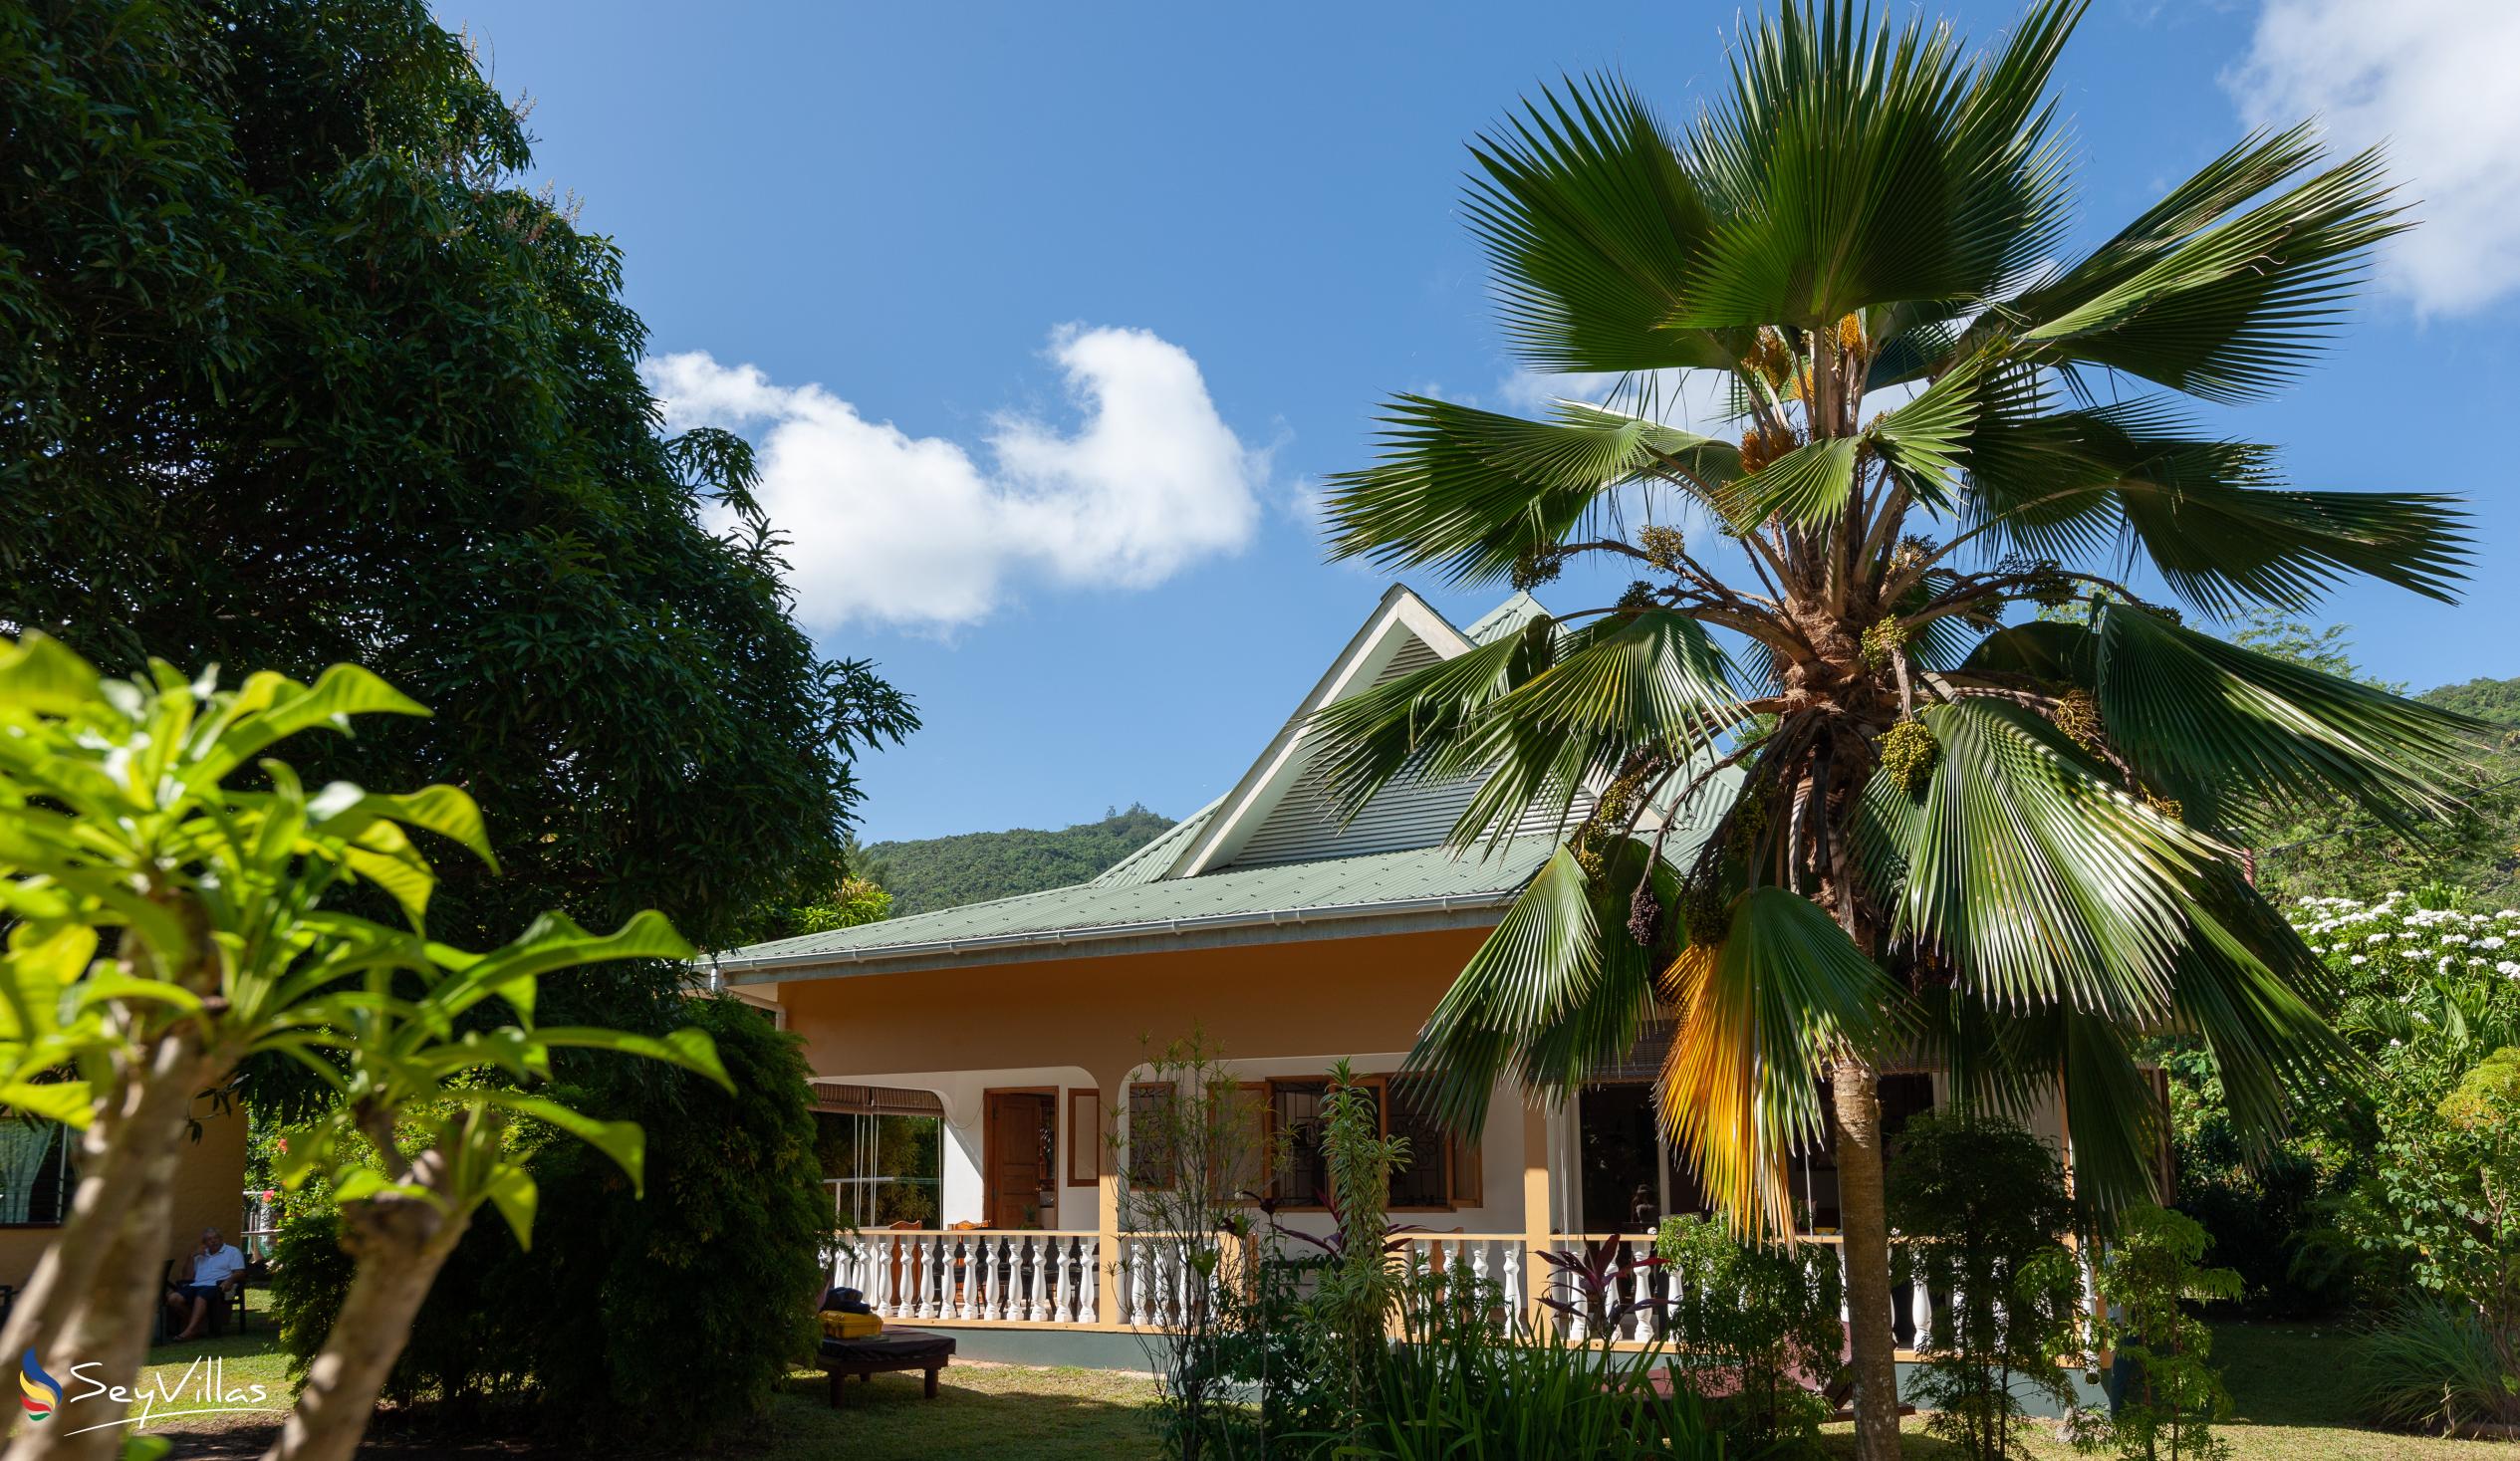 Foto 3: Chez Marlin - Aussenbereich - Praslin (Seychellen)